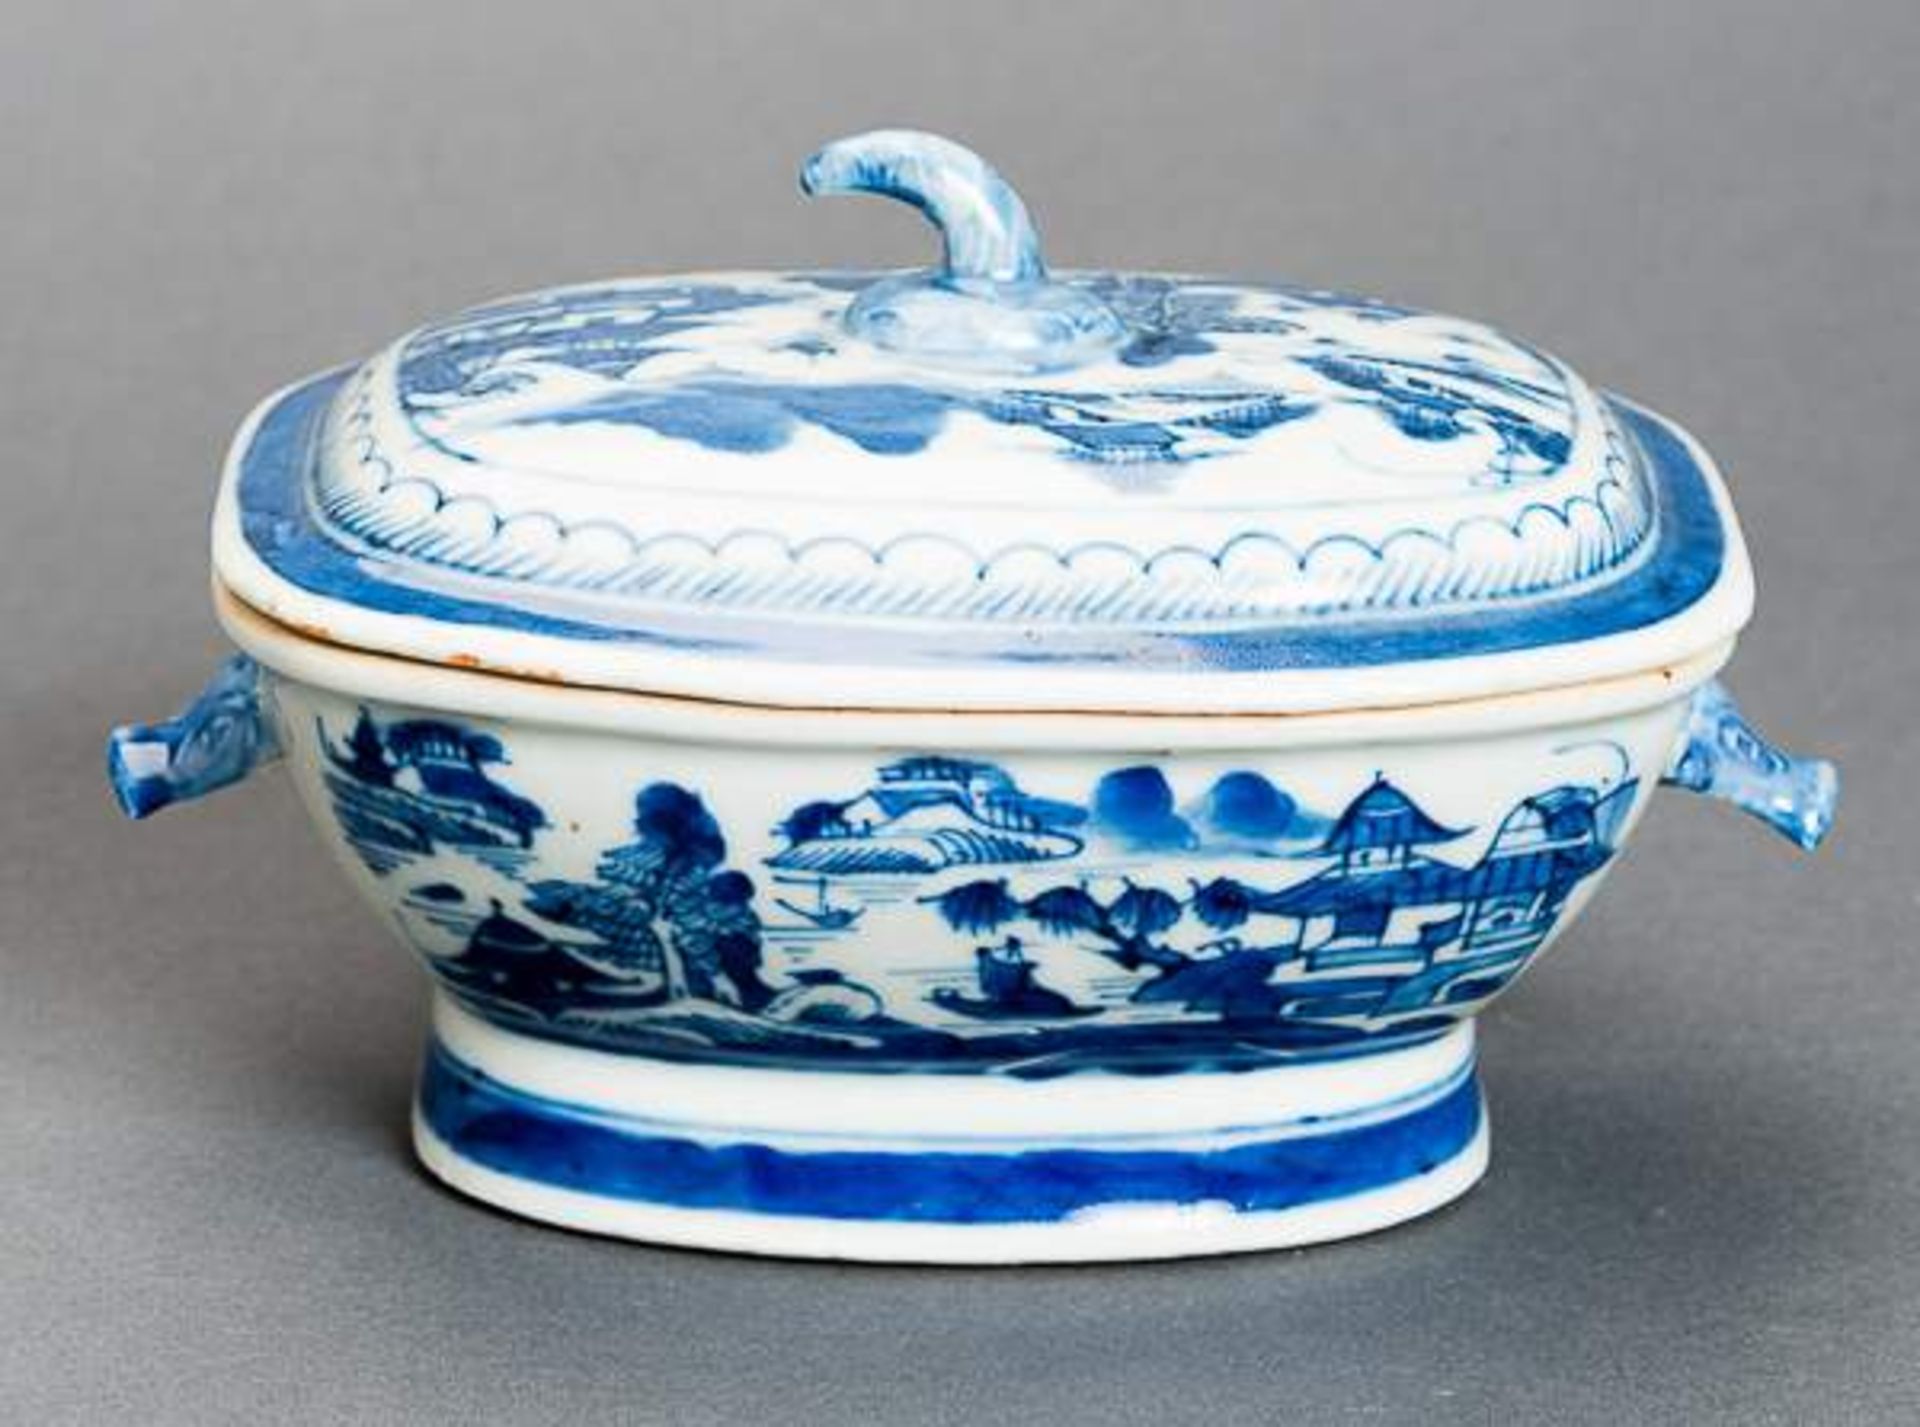 DECKELSCHALE Blauweiß-Porzellan. China, Qing-Dynastie, 19. Jh. Diese sehr ansprechende oval- - Image 5 of 11